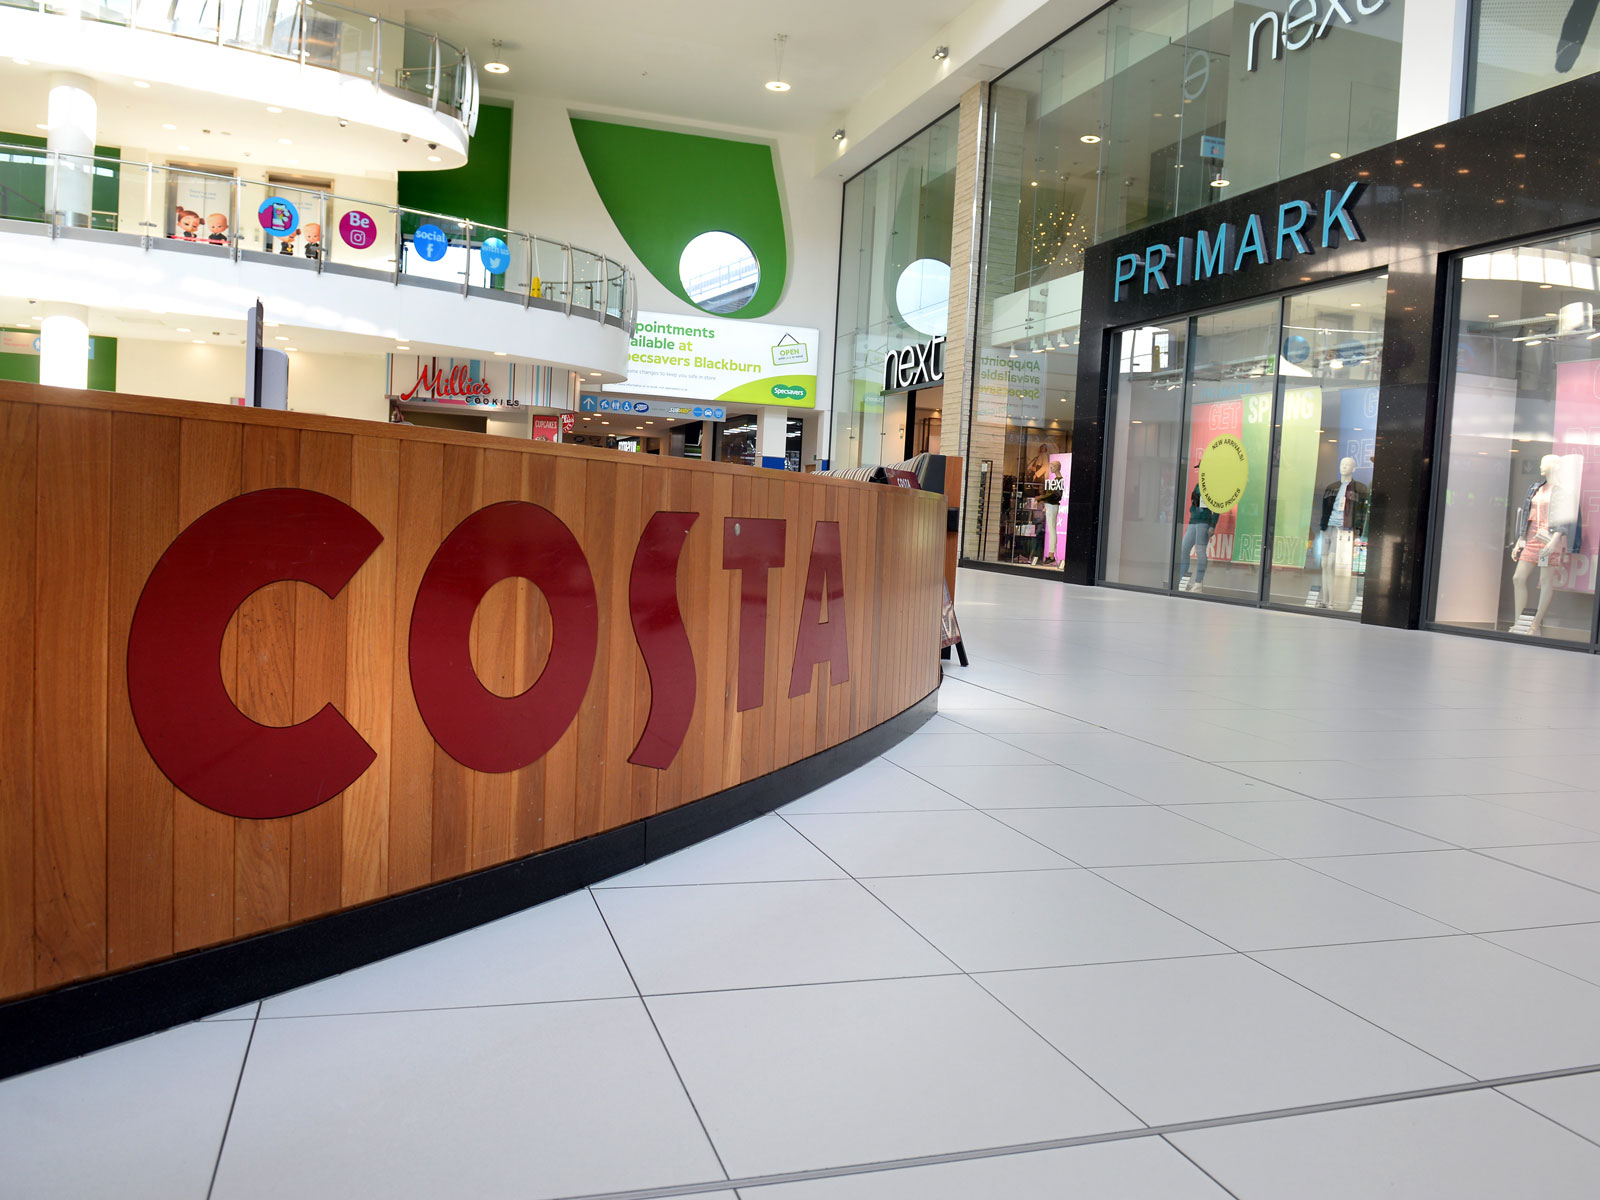 Costa Coffee and Primark in The Mall Blackburn